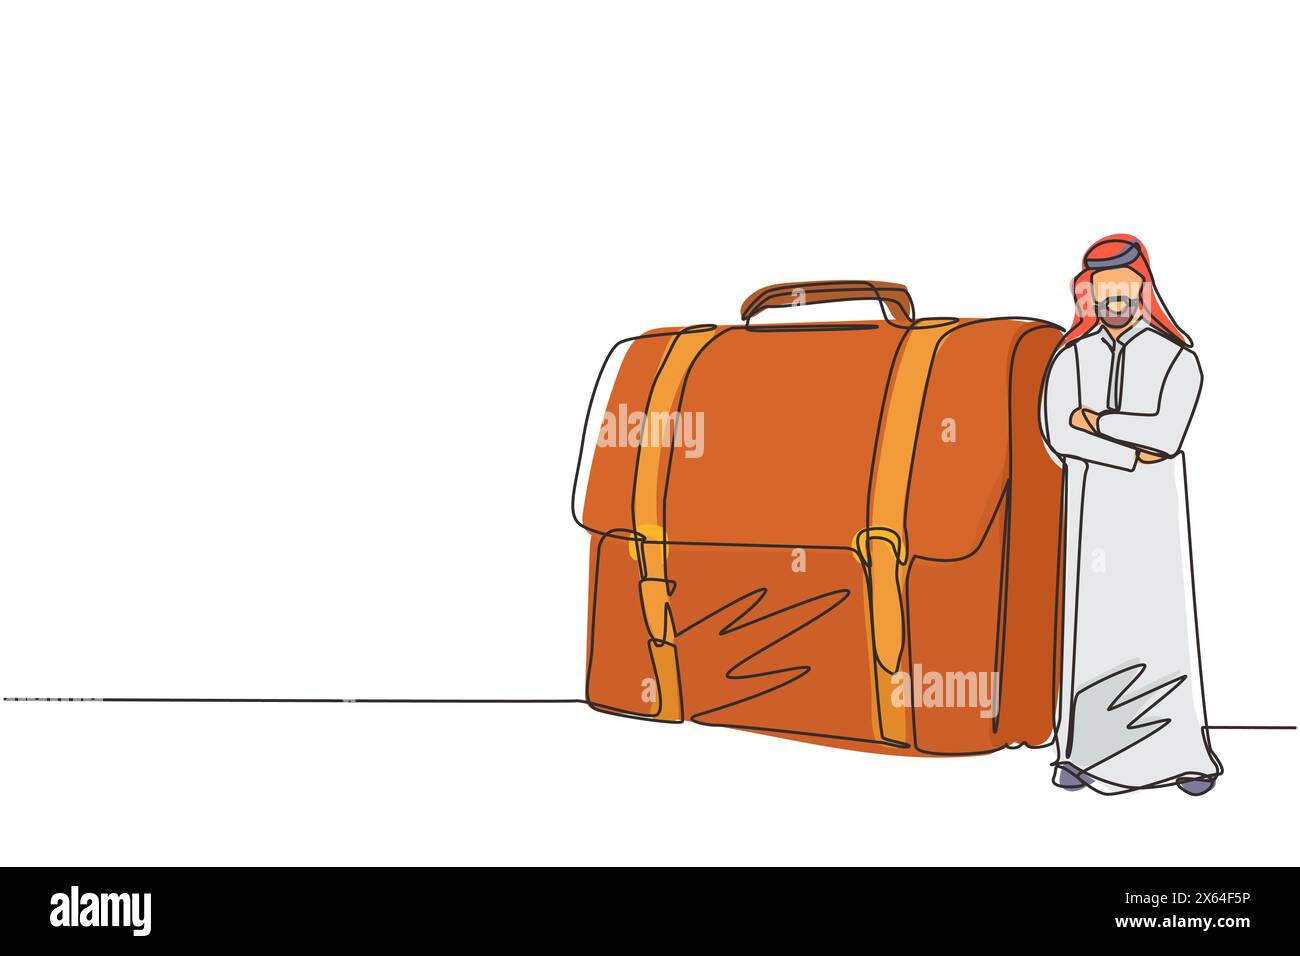 Una linea continua che disegna un imprenditore arabo moderno e fiducioso appoggiato a una valigetta grande. Uomo d'affari arabo in piedi con una posa elegante. Singolo Illustrazione Vettoriale